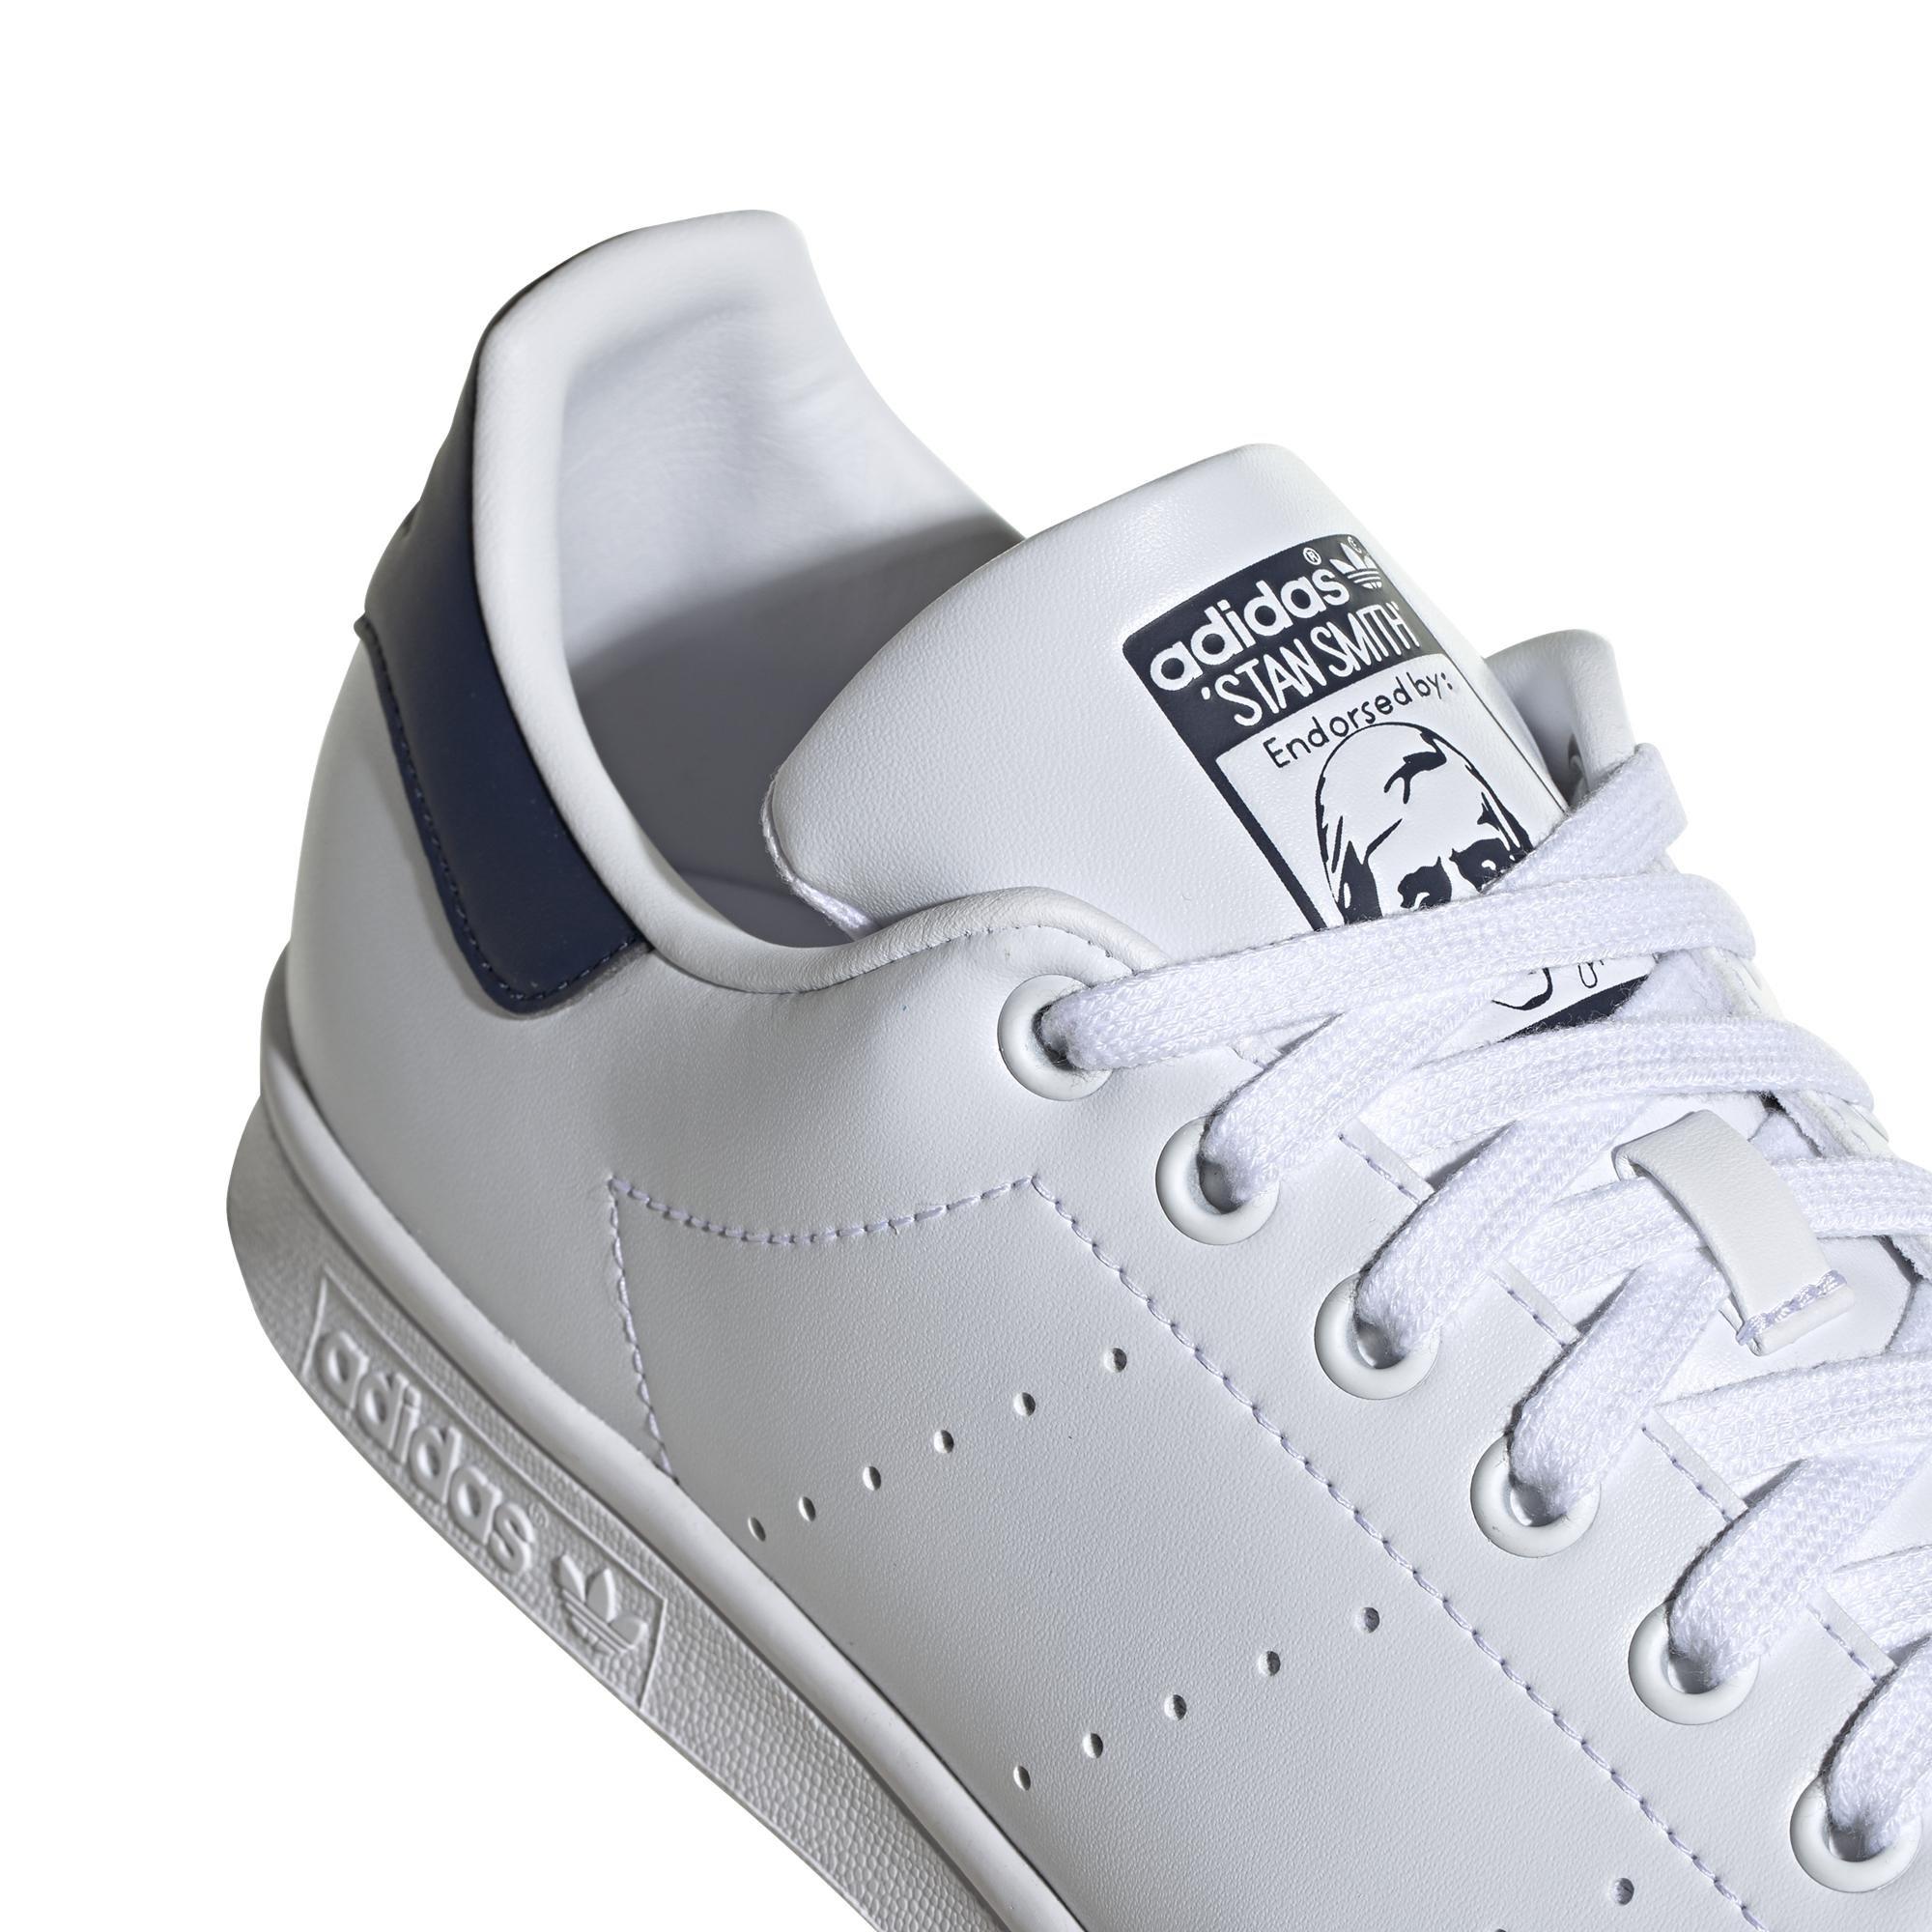 adidas - Men Stan Smith Shoes, White